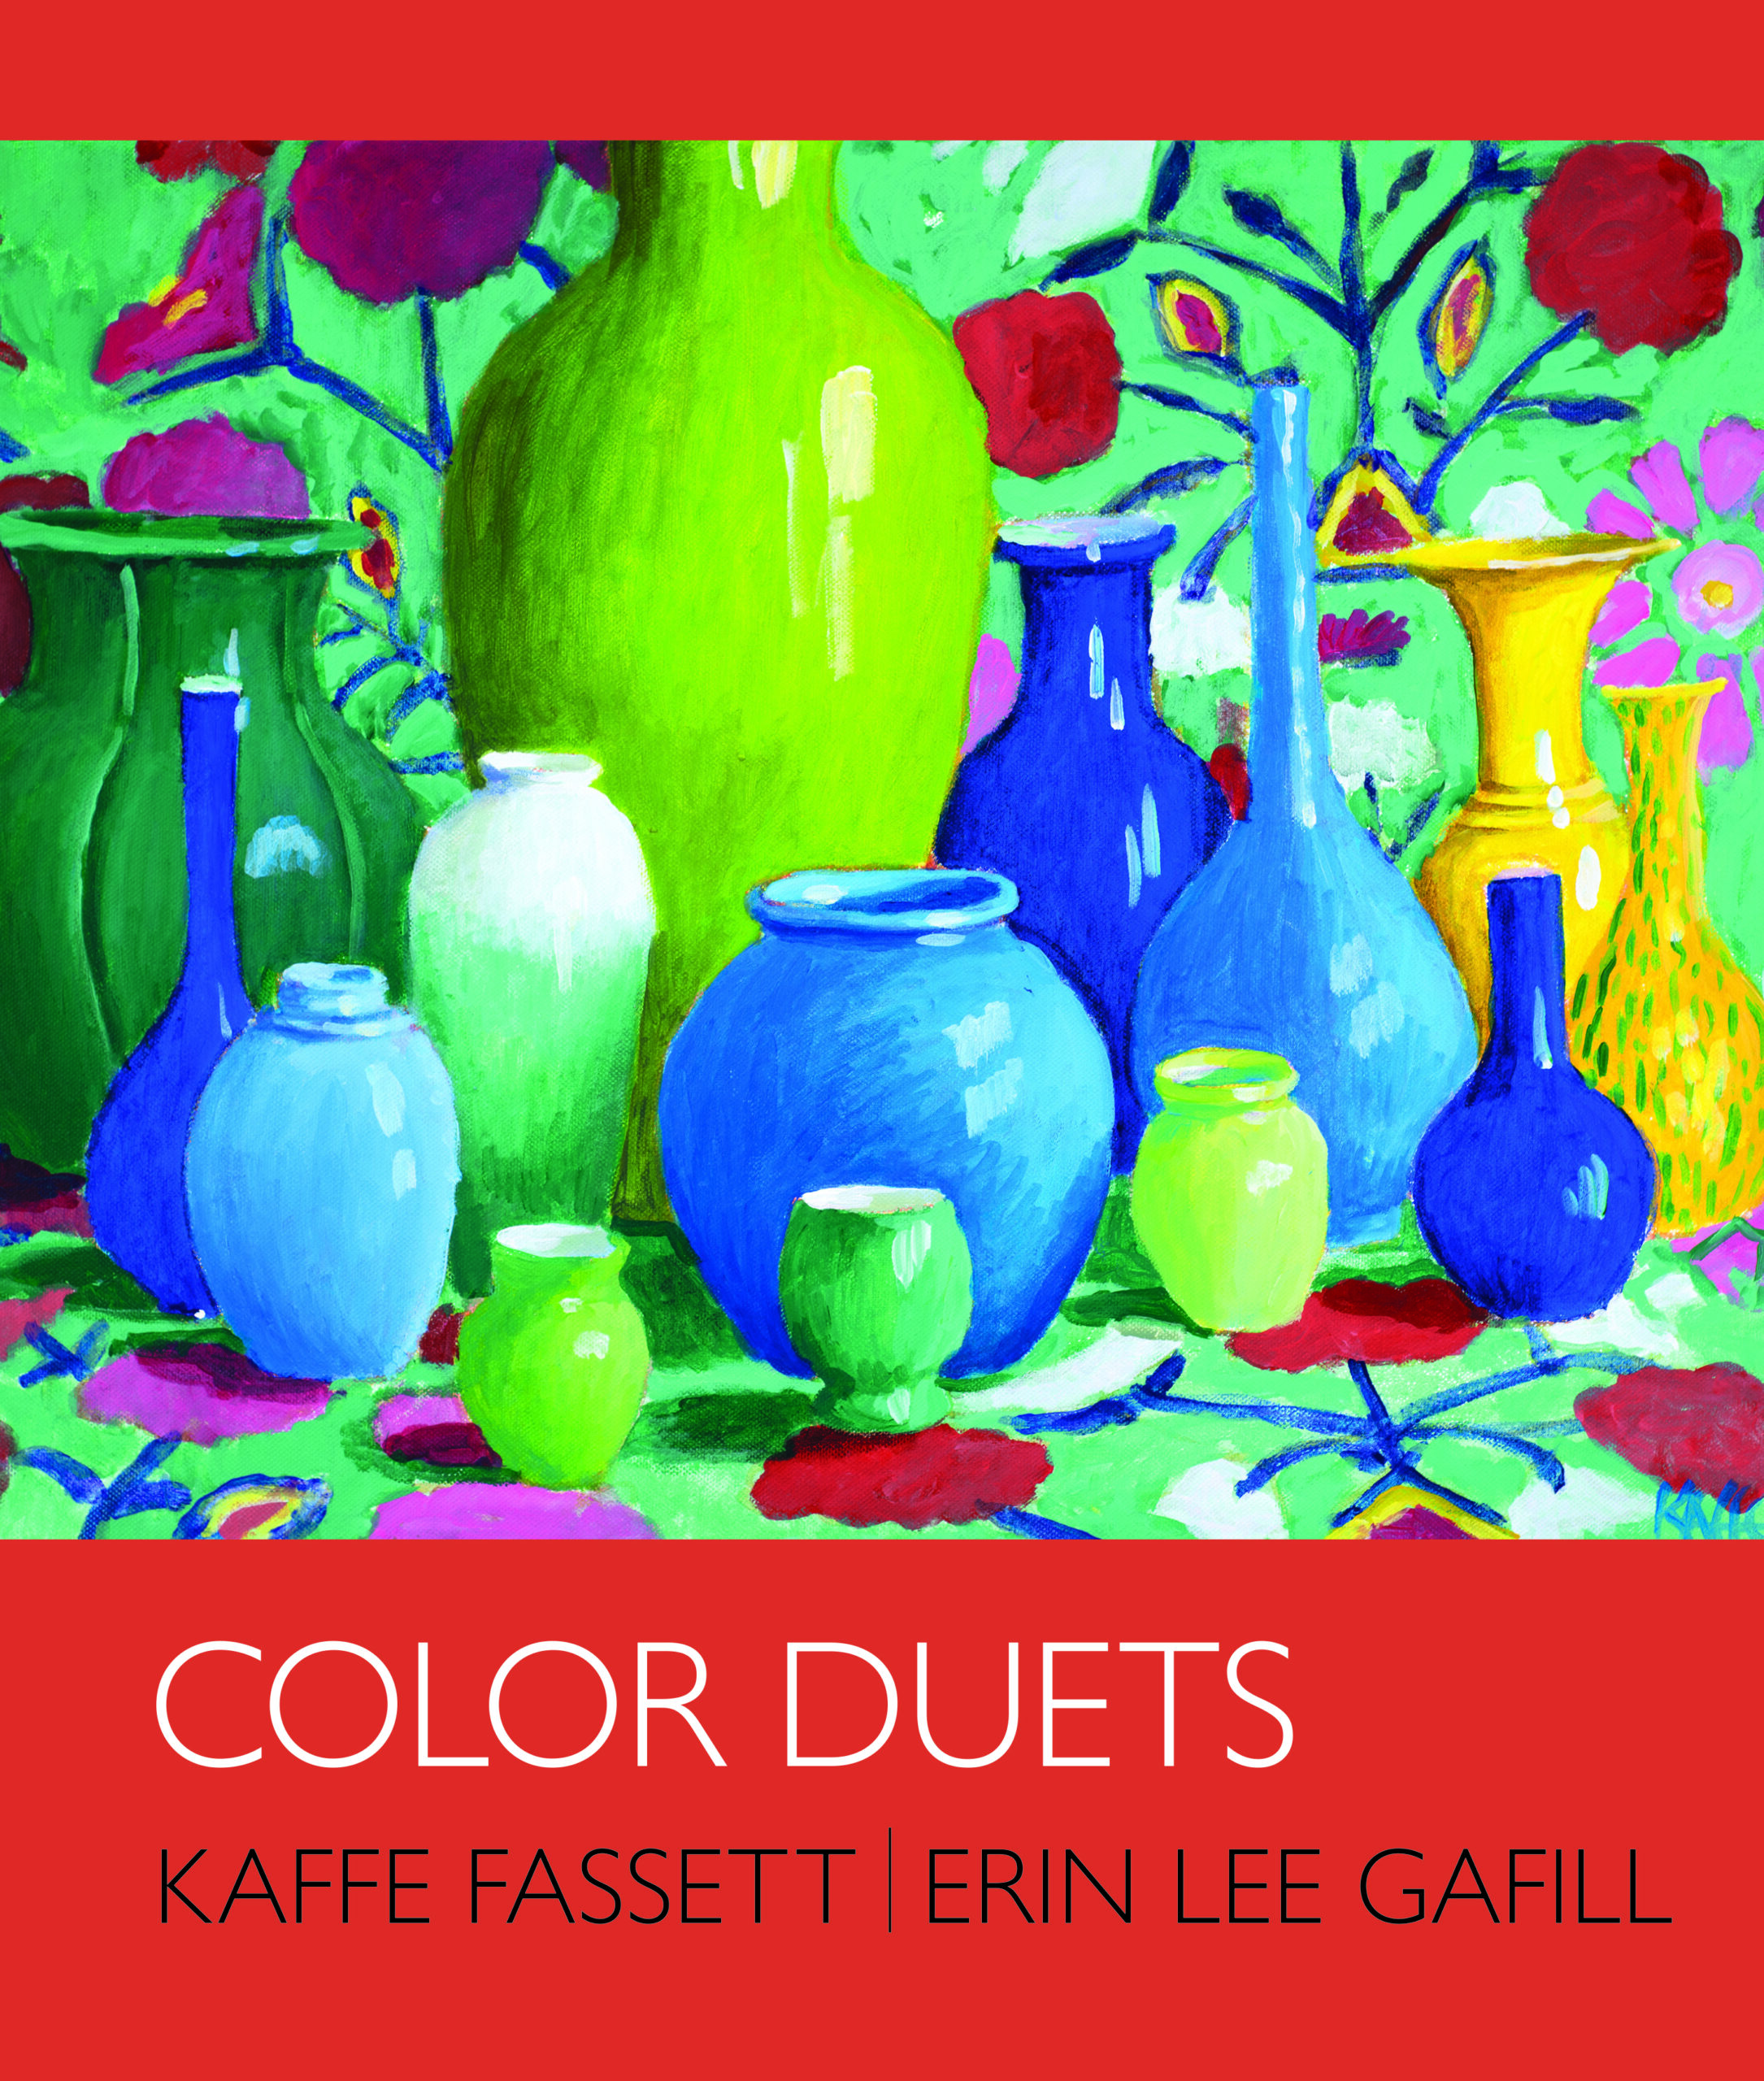 Color Duets - Kaffe Fassett | Erin Lee Gafill